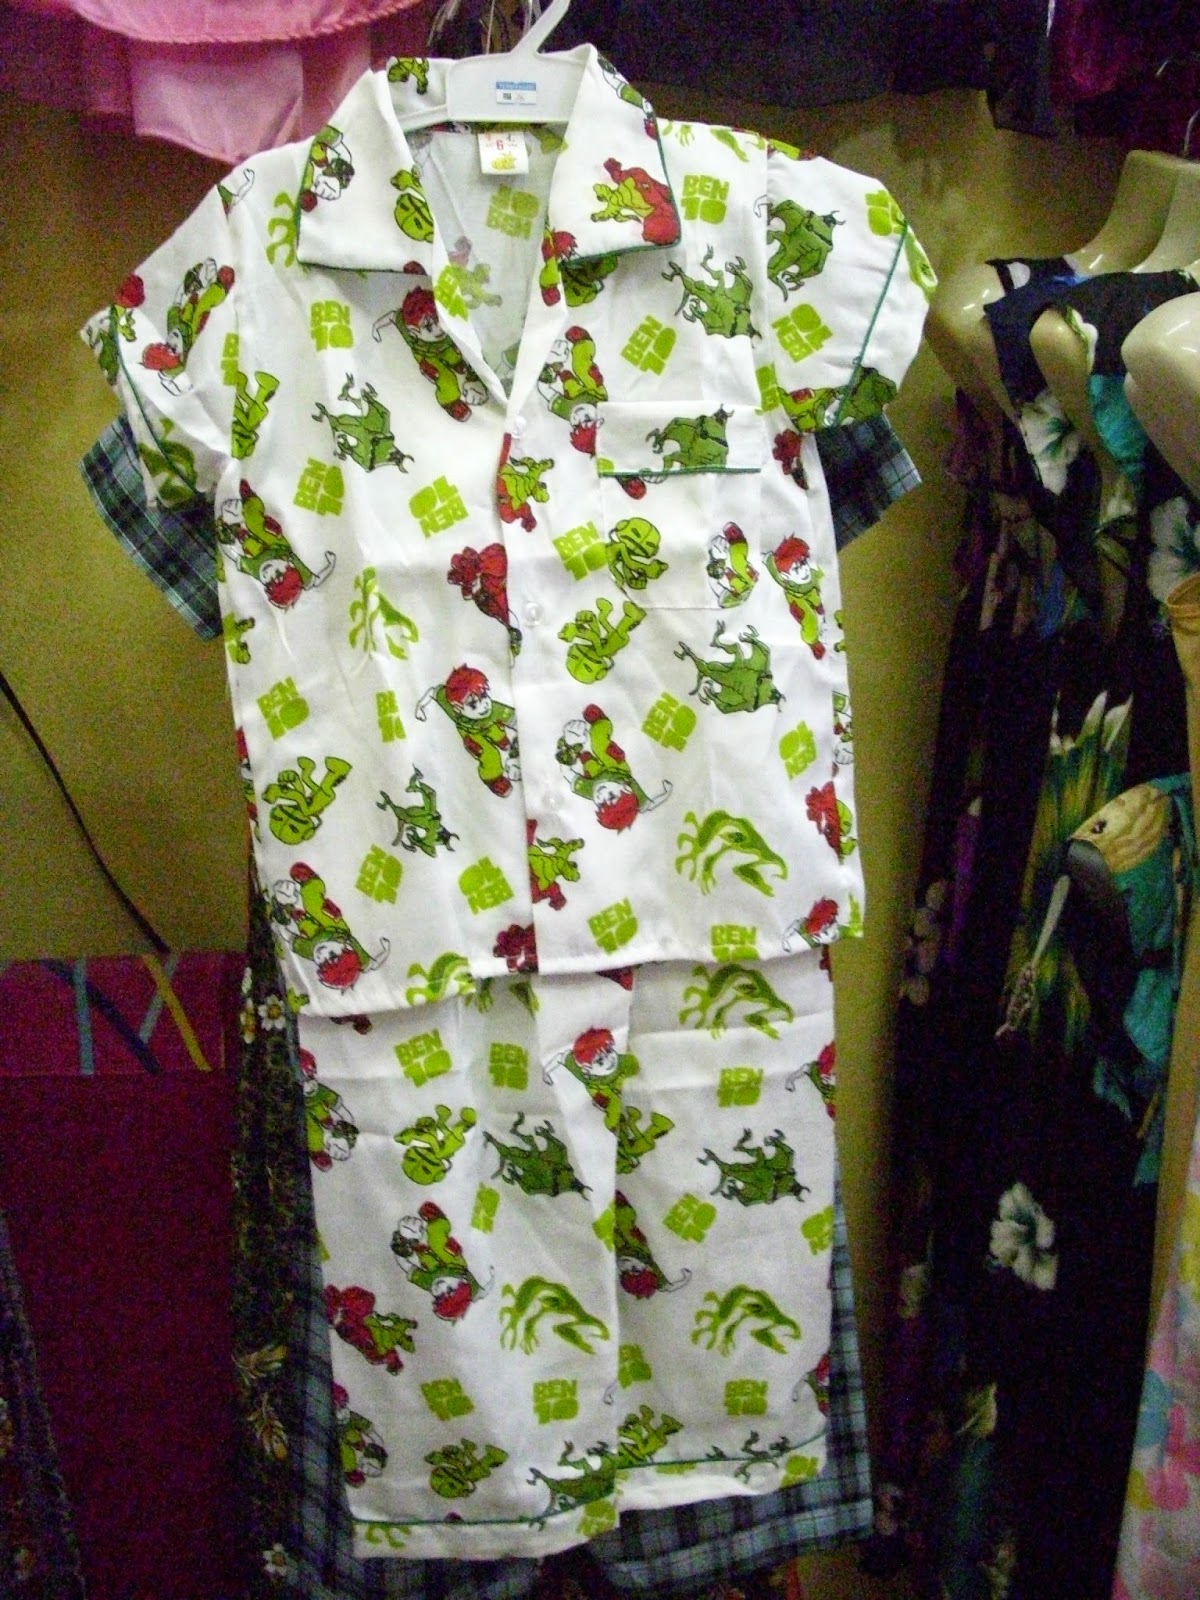 Baju Tidur Kanak-Kanak - baju budak baju kanak lelaki girl's clothing